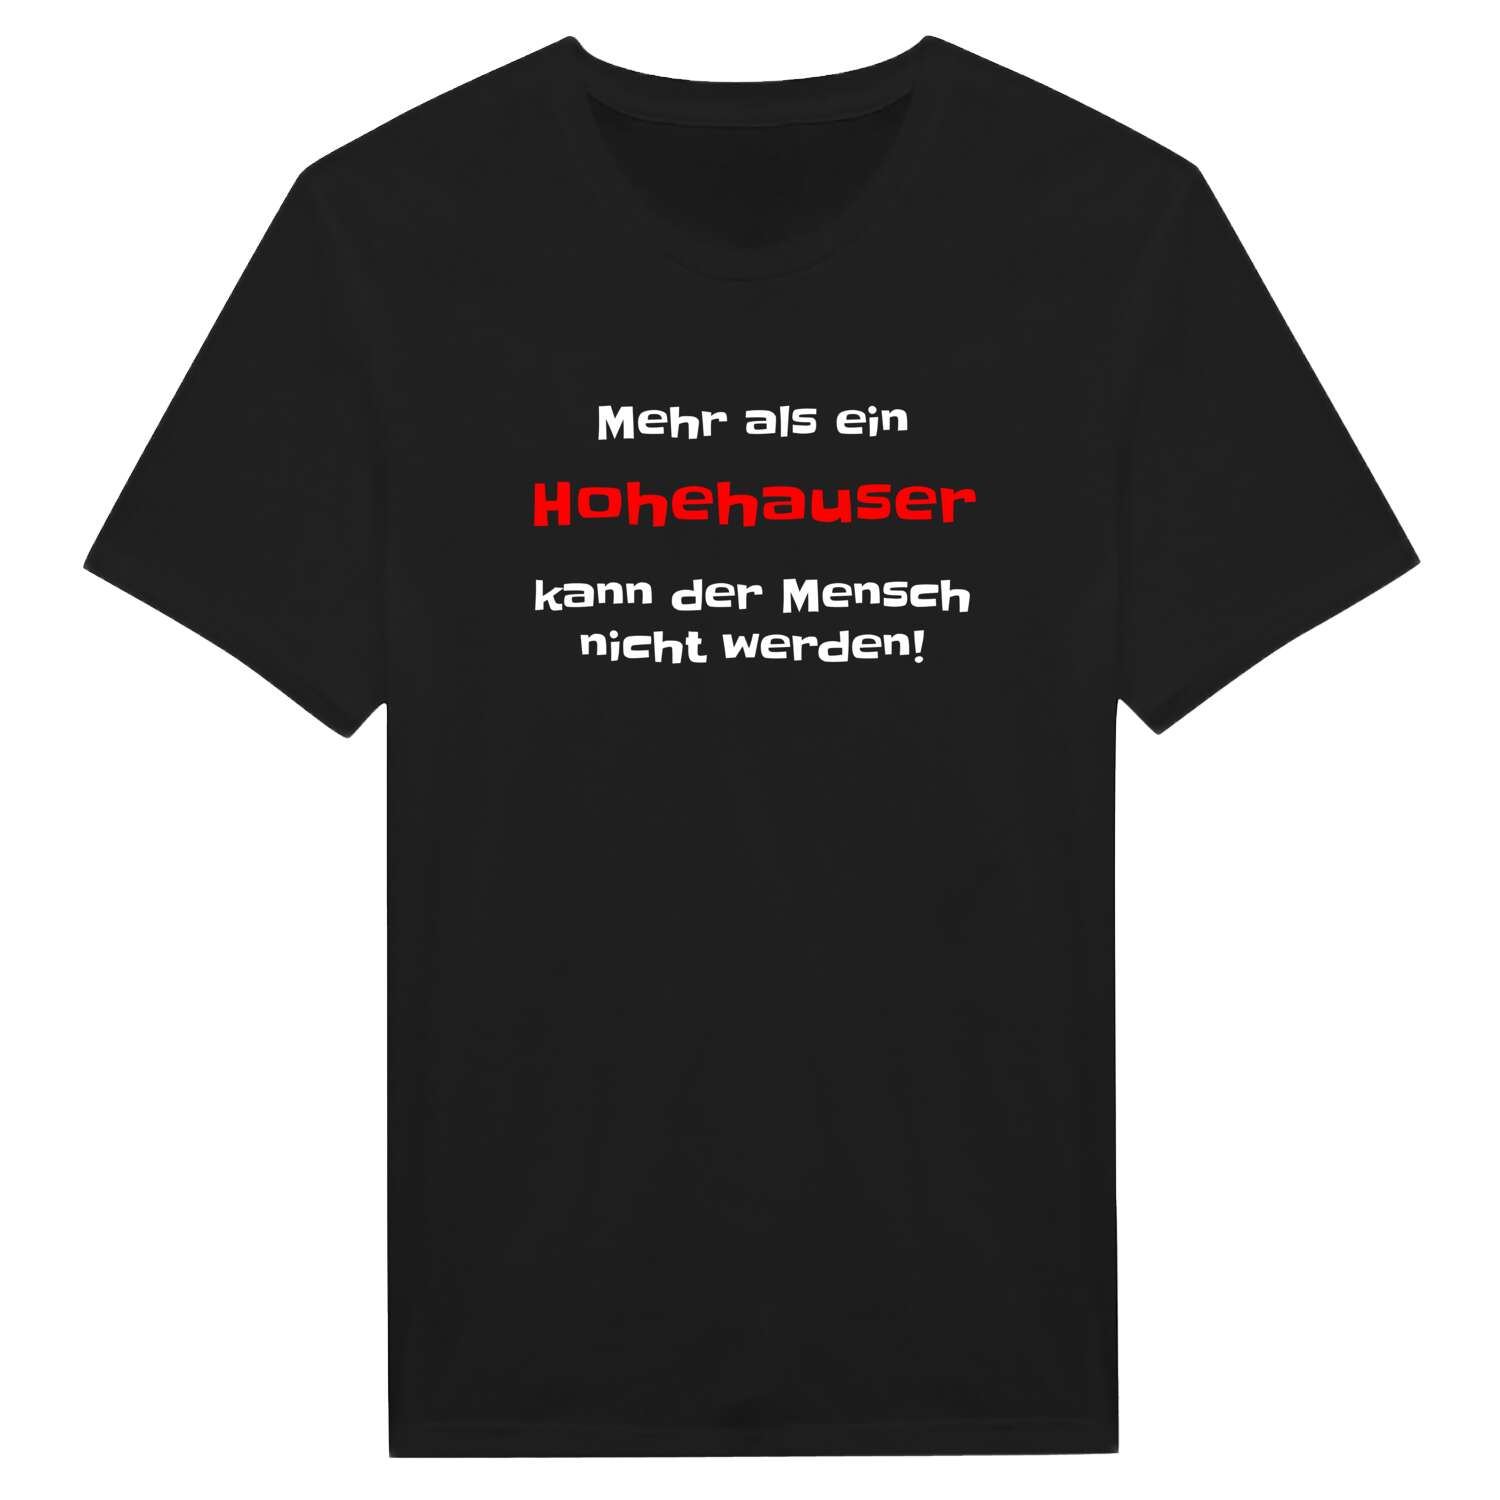 Hohehaus T-Shirt »Mehr als ein«